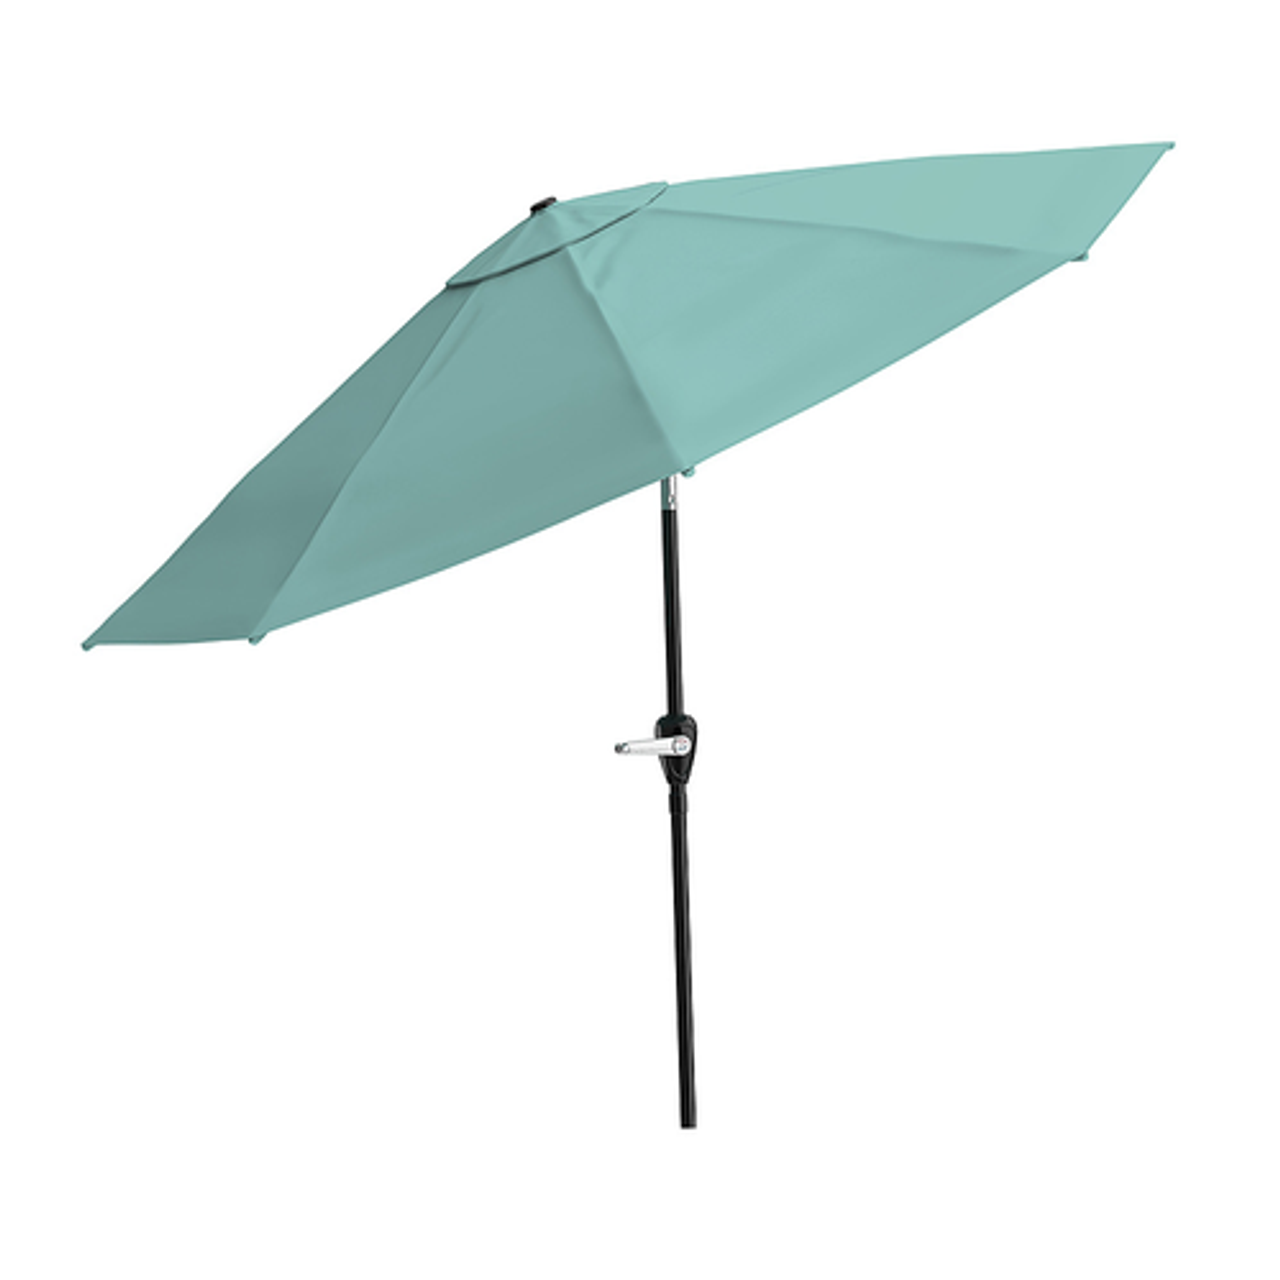 Nature Spring - Patio Umbrella with Auto Tilt – 10 Ft Easy Crank Outdoor Table Umbrella Shade for Deck, Balcony, Backyard (Green) - Dusty Green